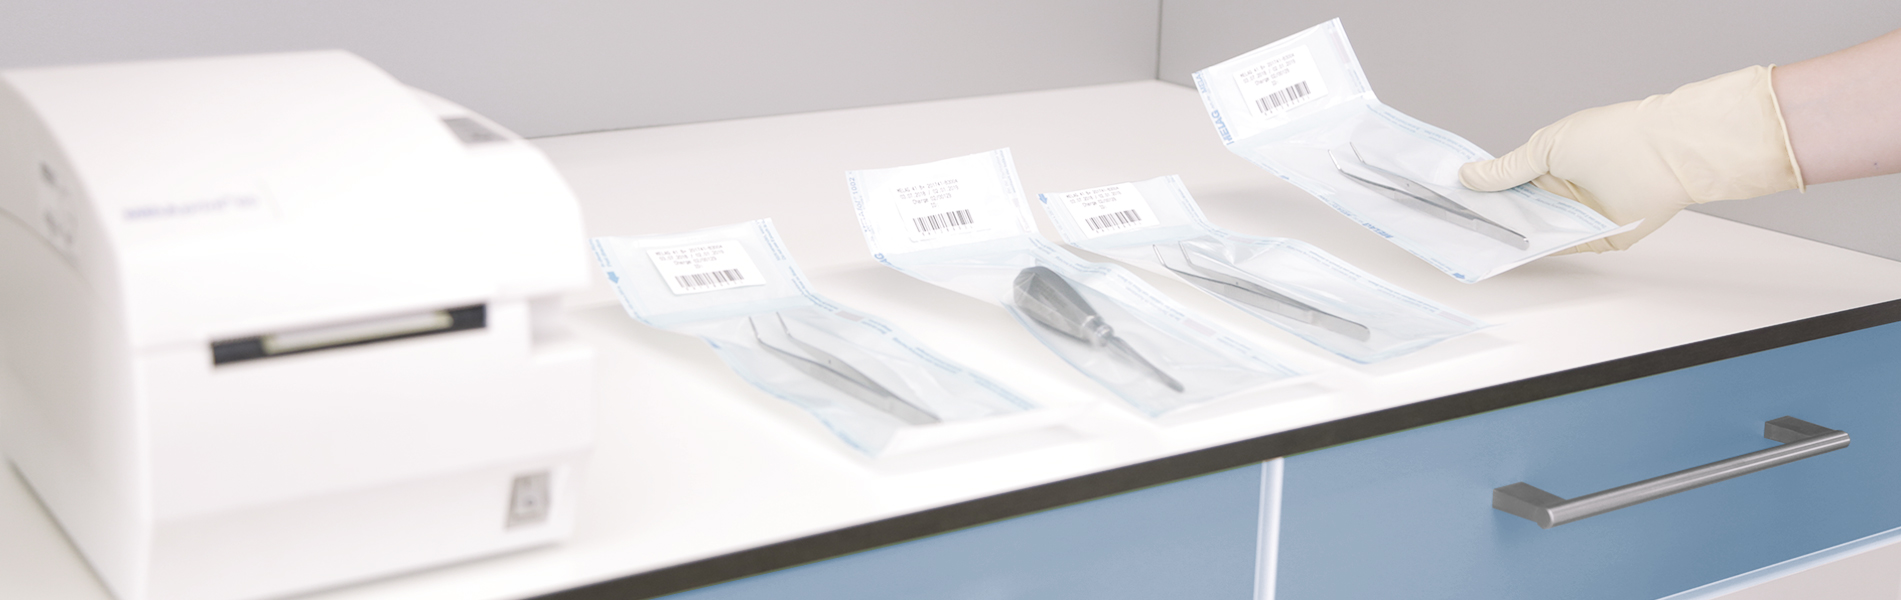 Bolsas selladas con instrumentos estériles en la superficie de trabajo en la sala de esterilización